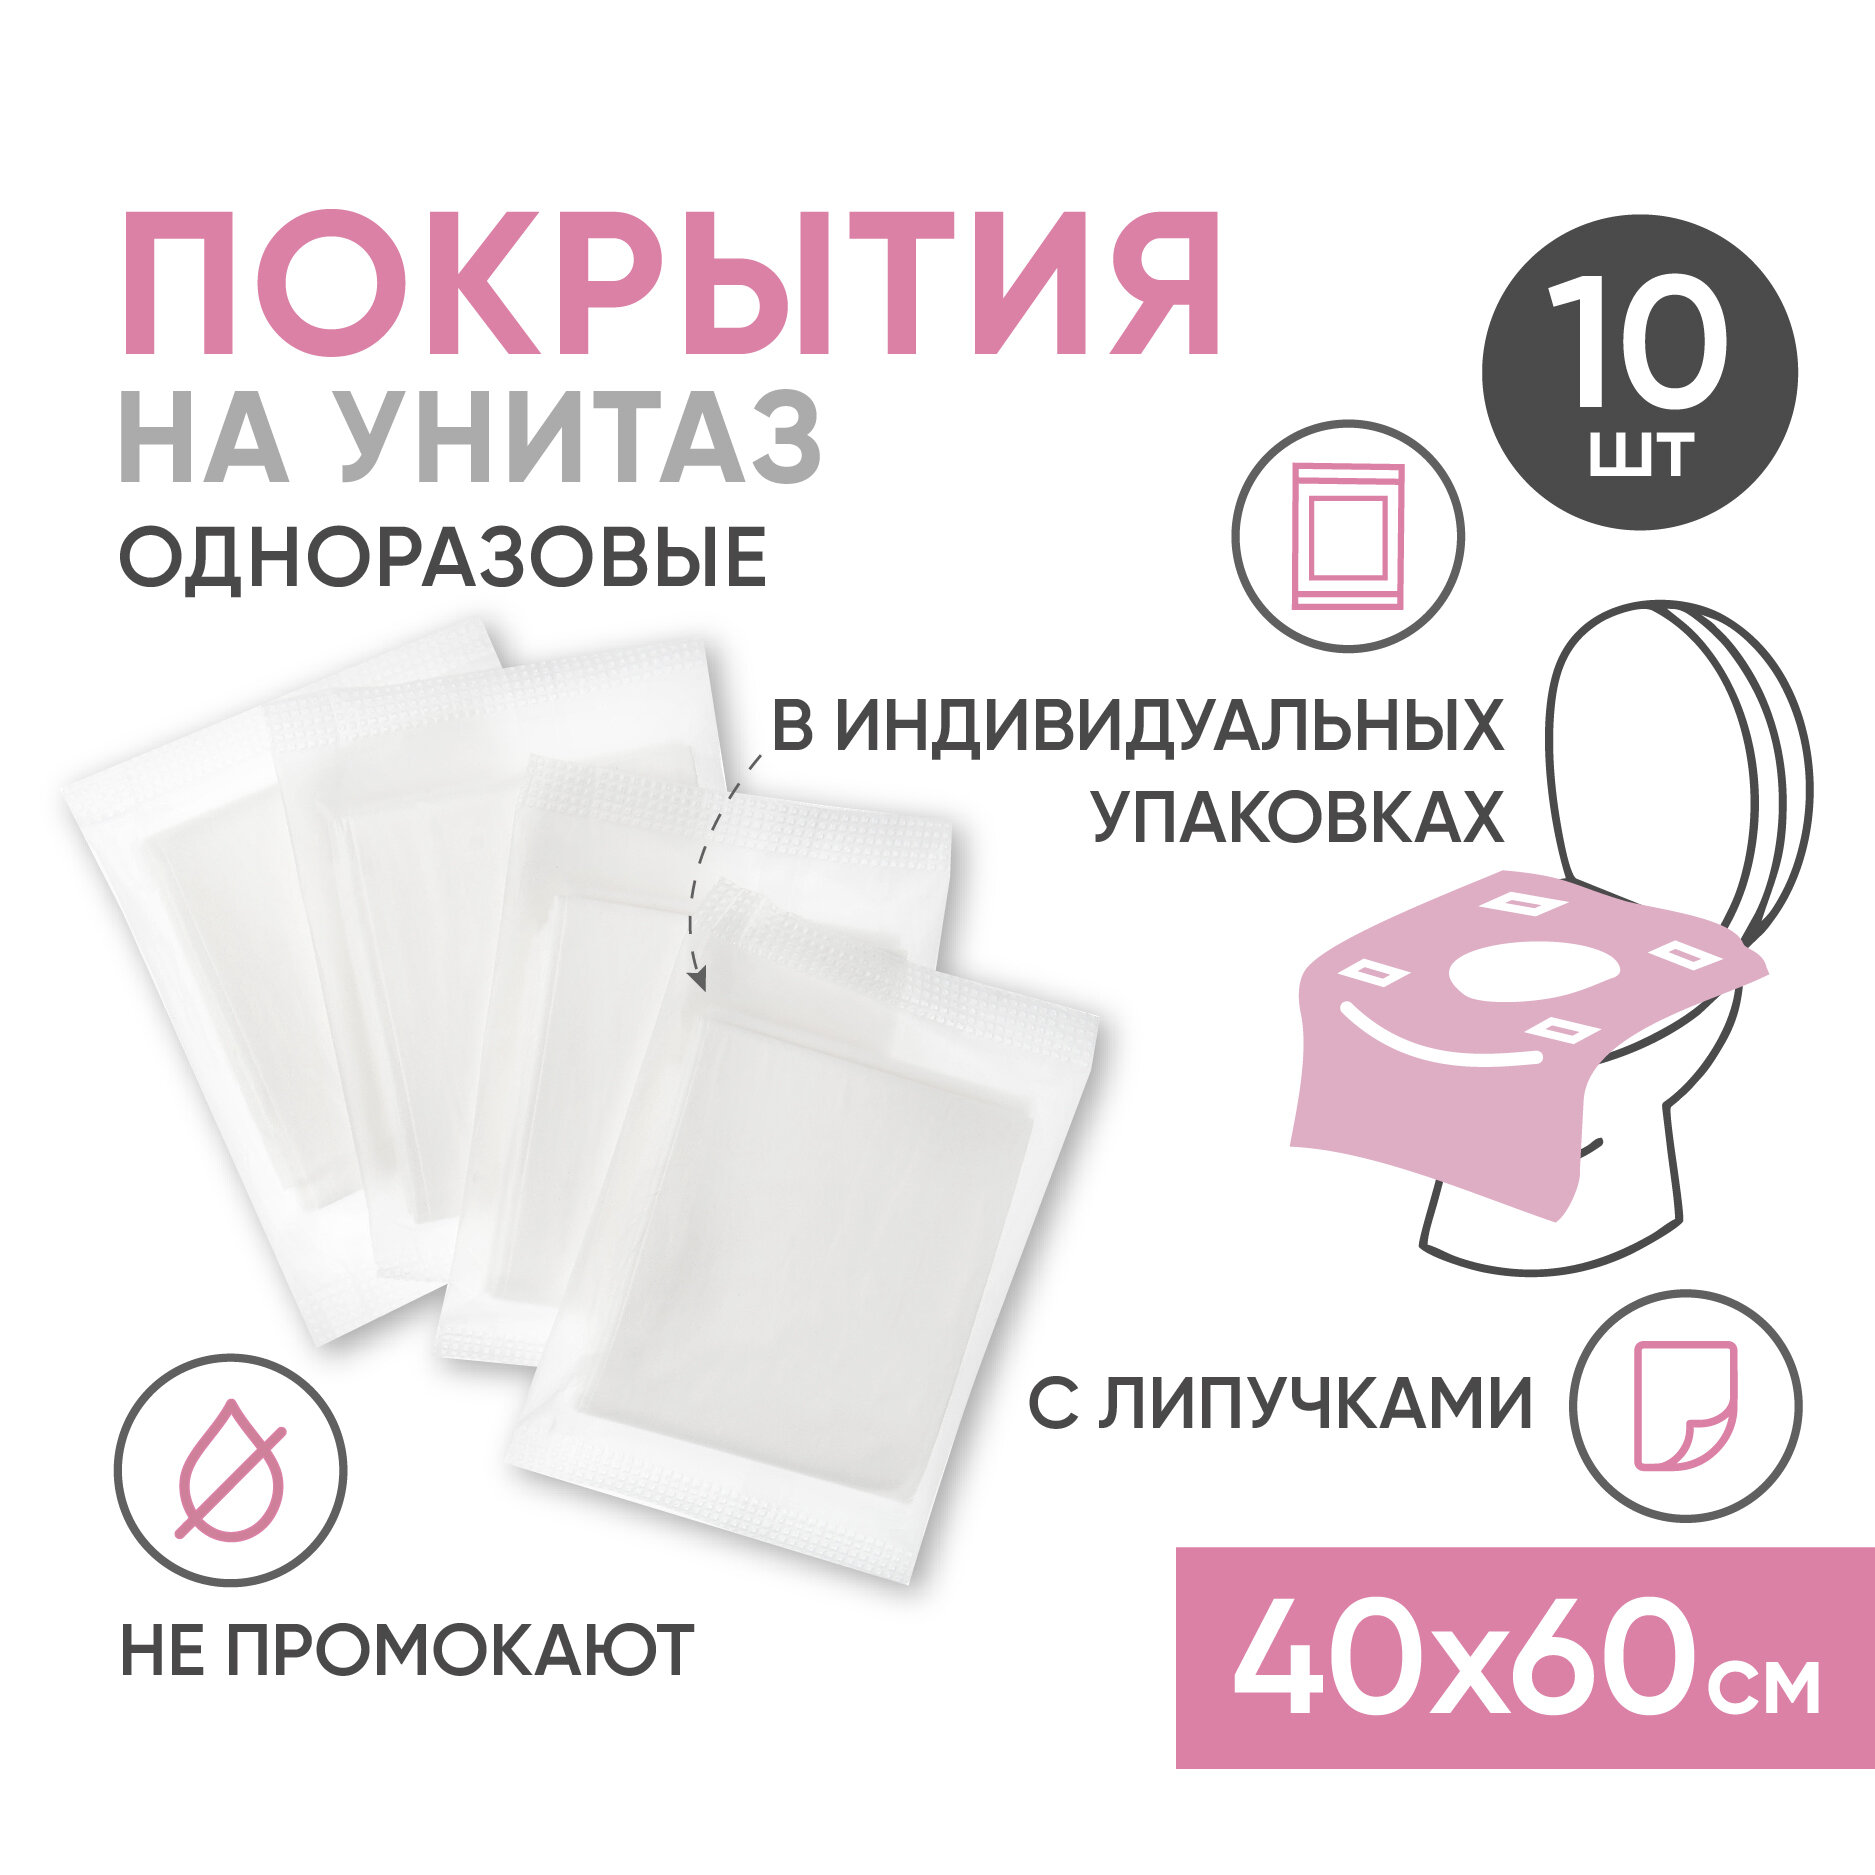 Покрытия на унитаз BESIDE 40х60 10 штук в индивидуальных упаковках гигиенические одноразовые накладки на сидения в туалете непромокаемые для детей взрослых в роддом